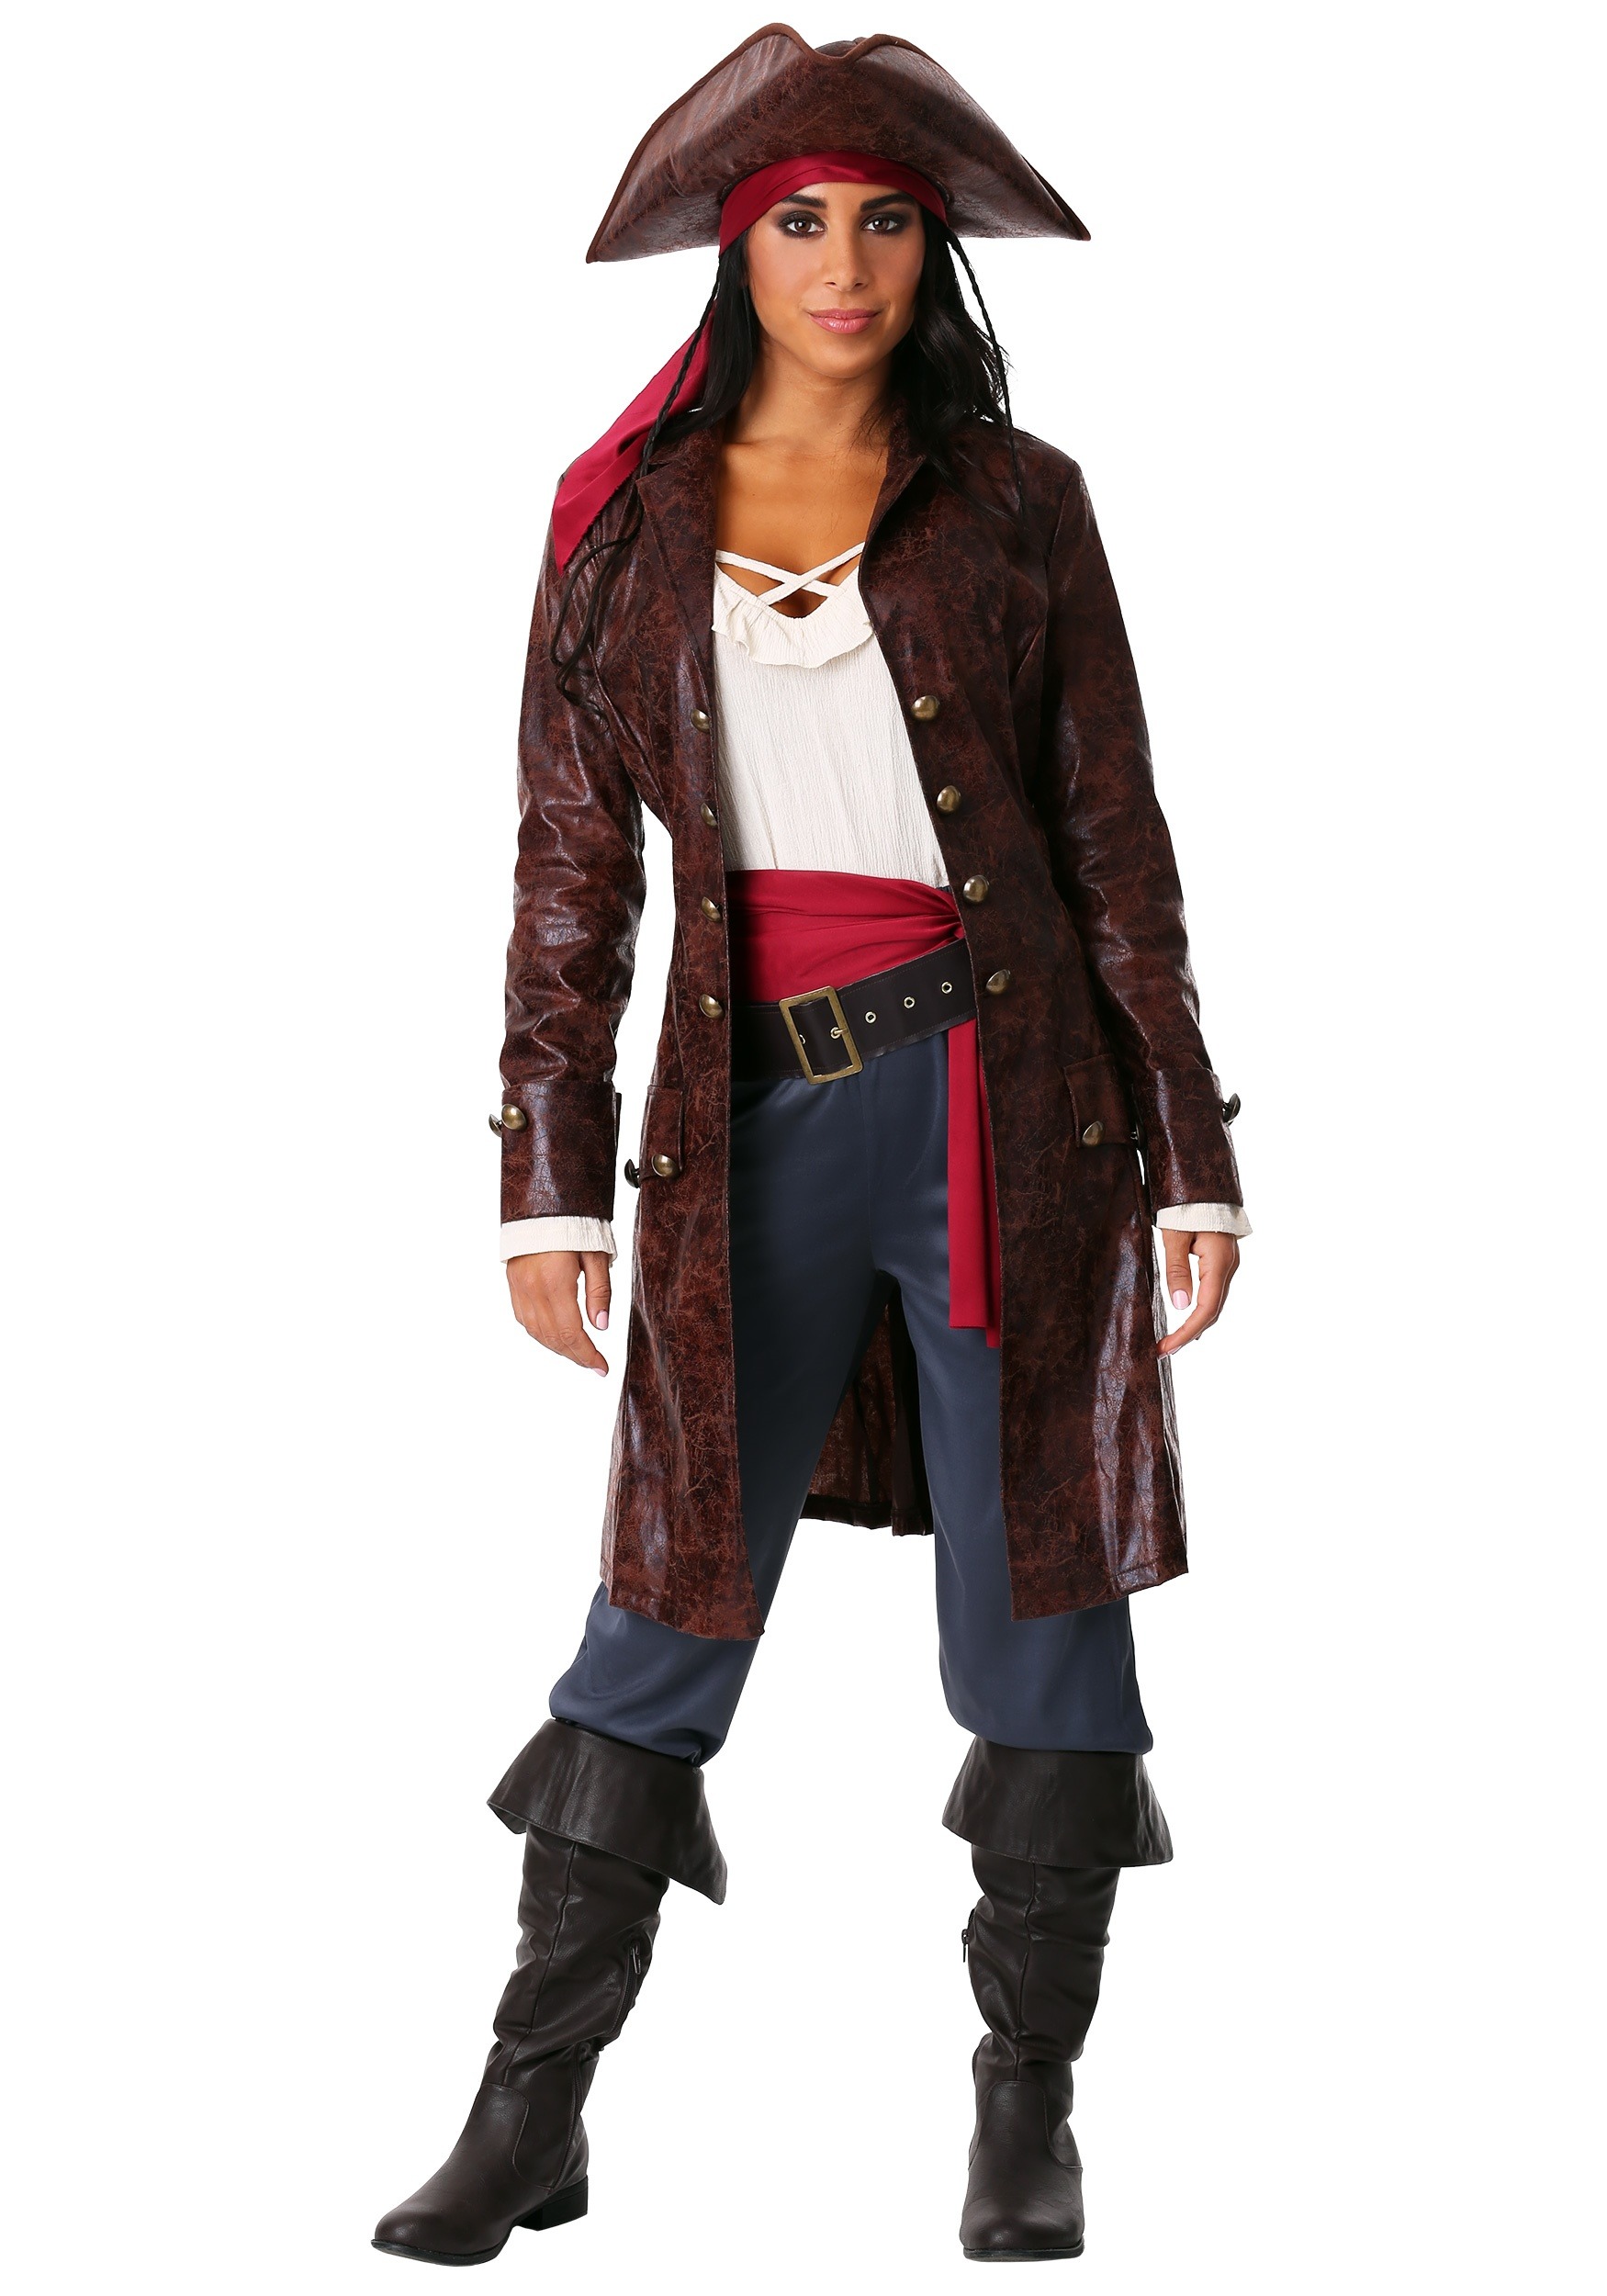 Image of Pretty Pirate Captain Costume for Women ID FUN0391AD-S